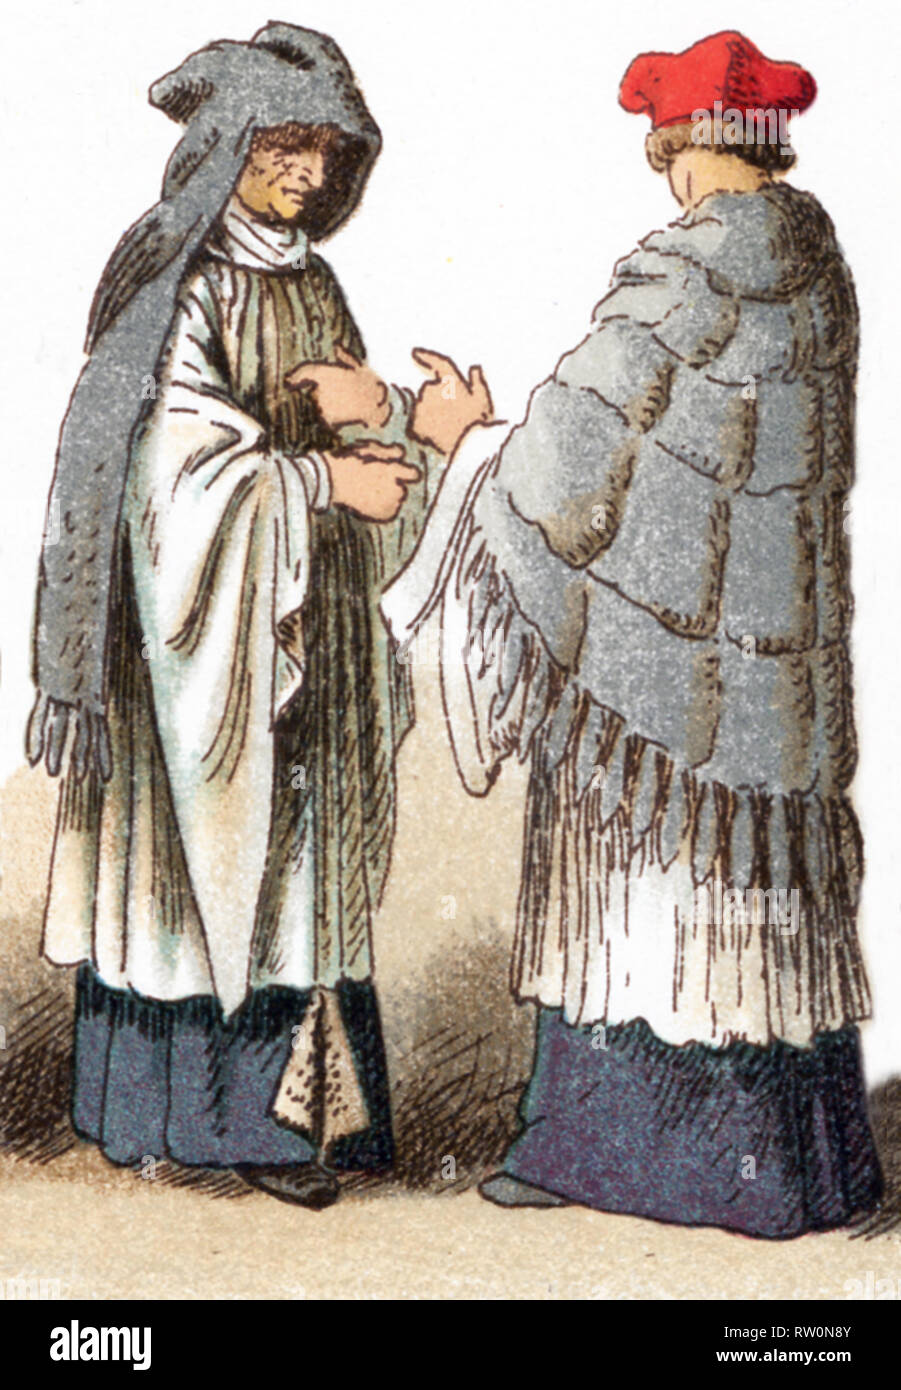 Las ilustraciones mostradas aquí representan los trajes eclesiásticos de un canon vistiendo una cope y amess en el siglo XV y un Canon en el siglo XVII. La ilustración se remonta a 1882. Foto de stock